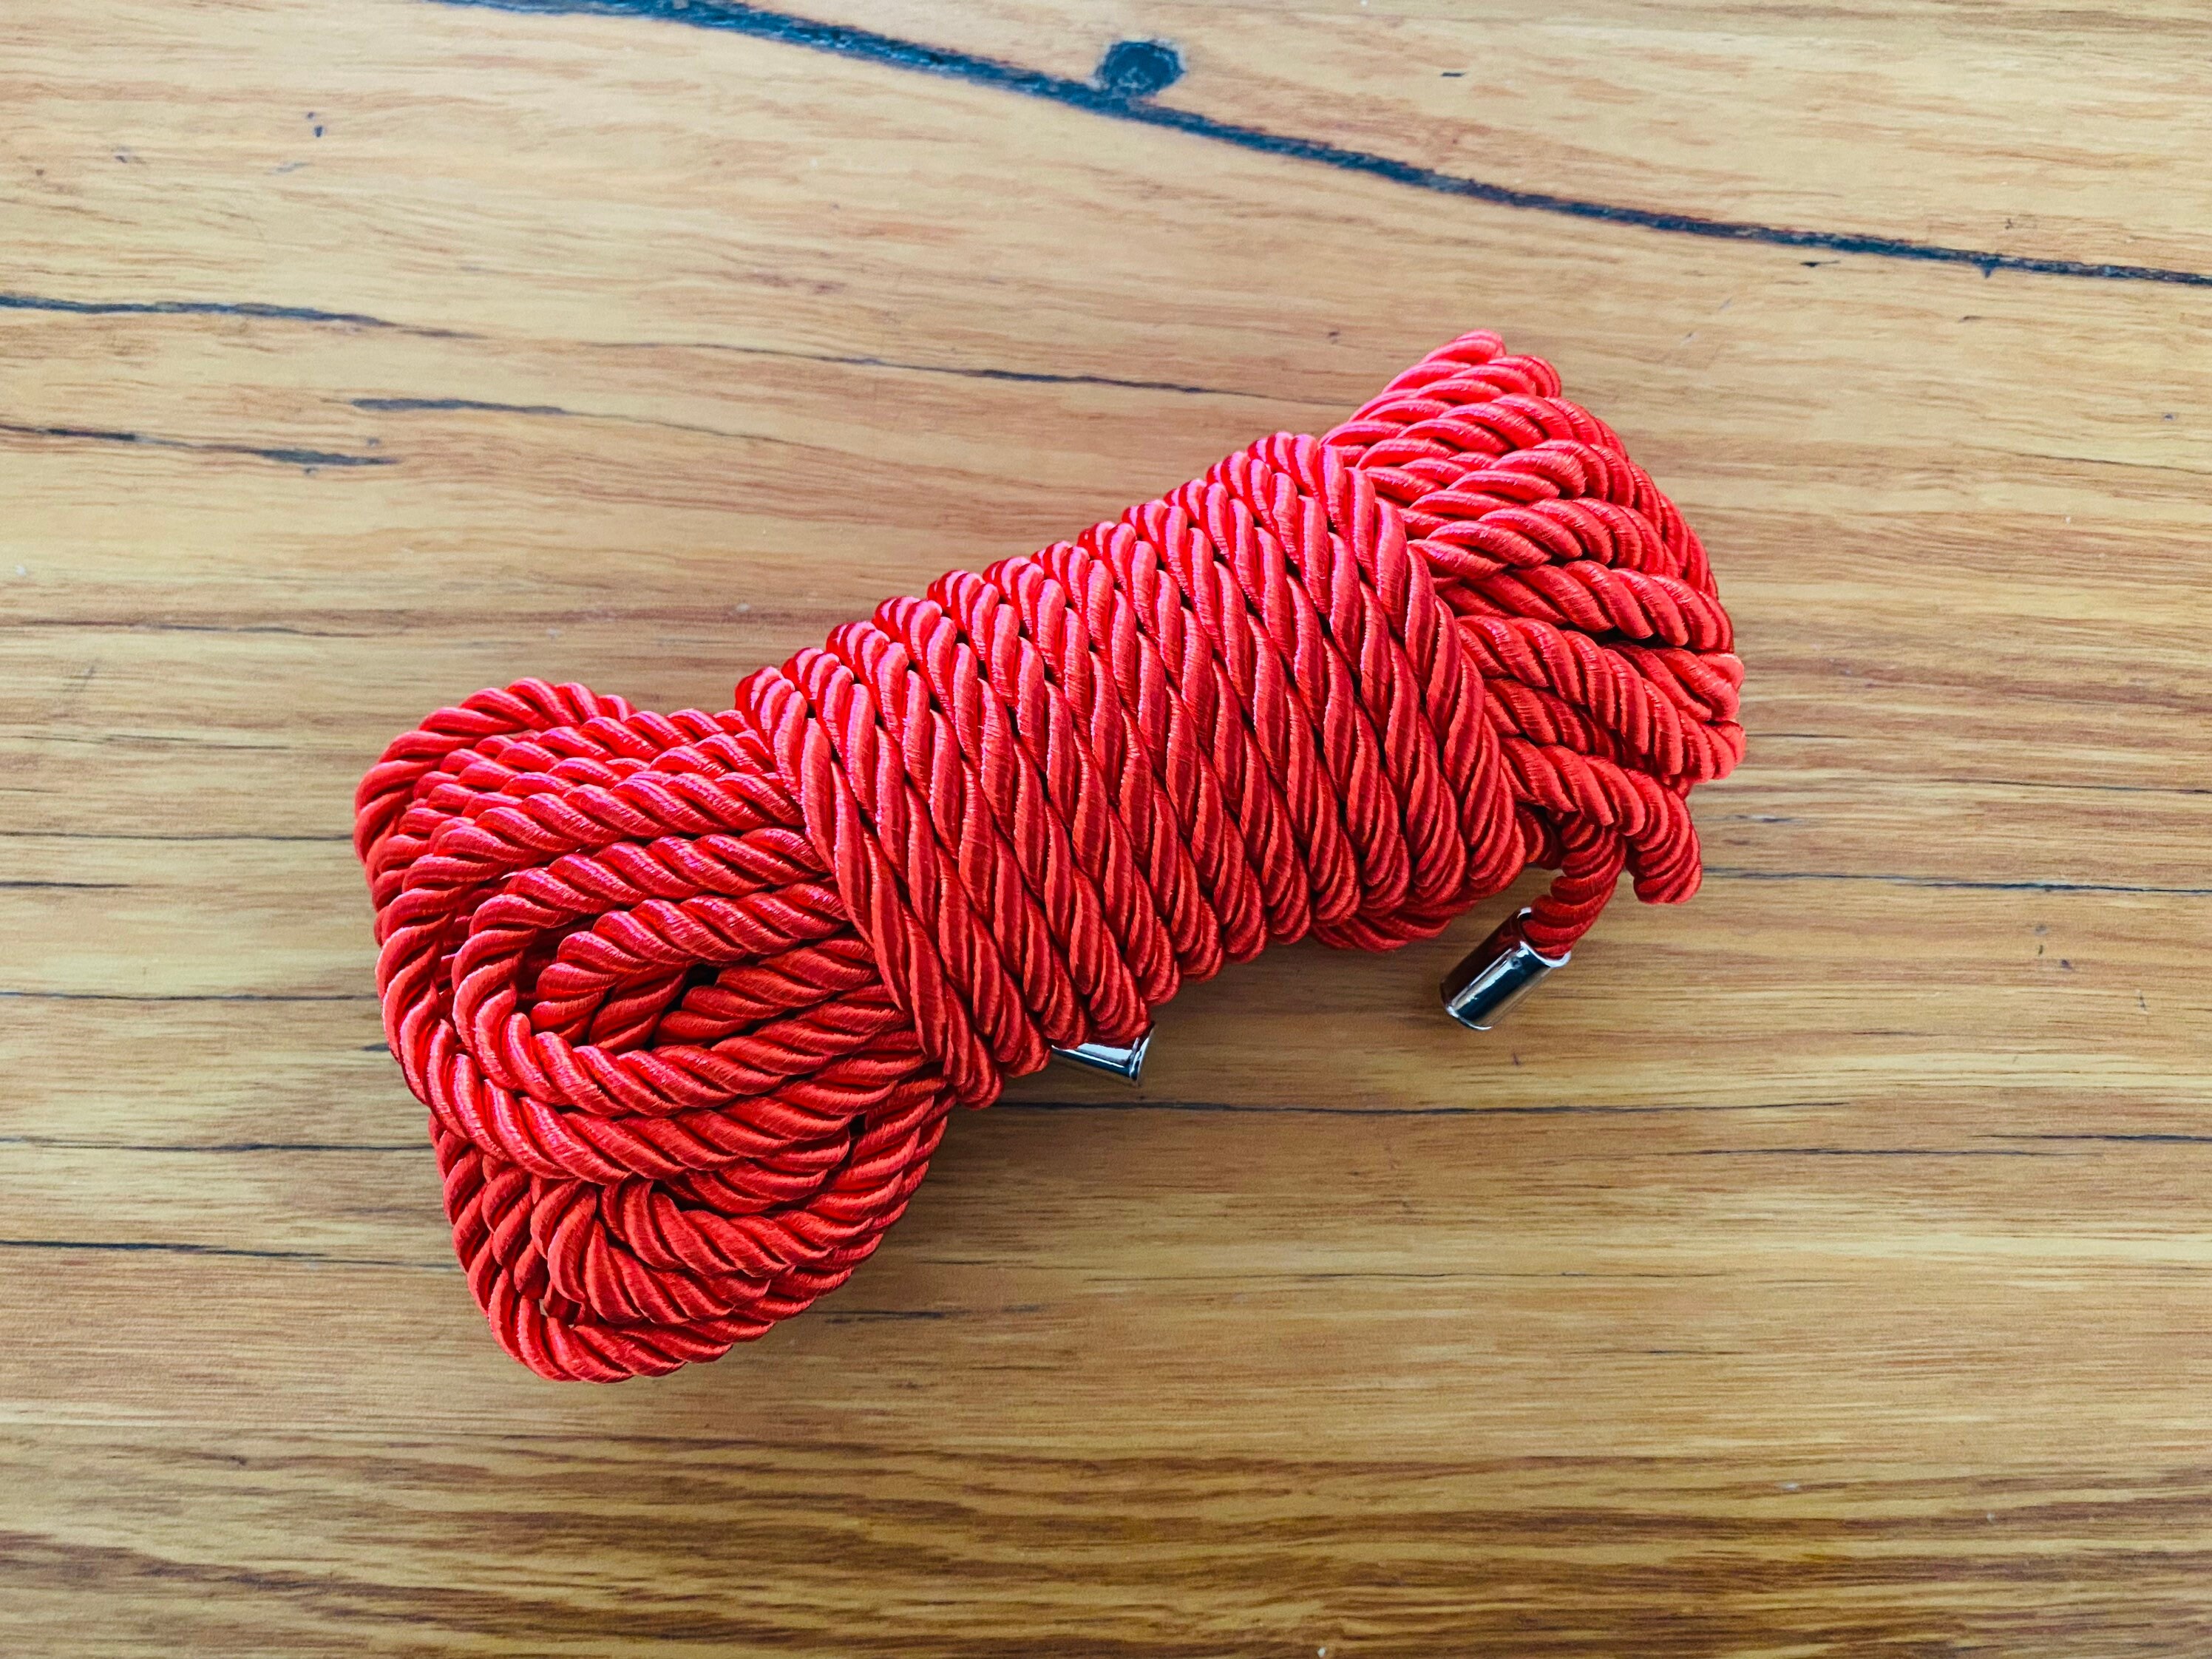 Nylon (Braided) Shibari Rope 15 ft – deGiotto Rope